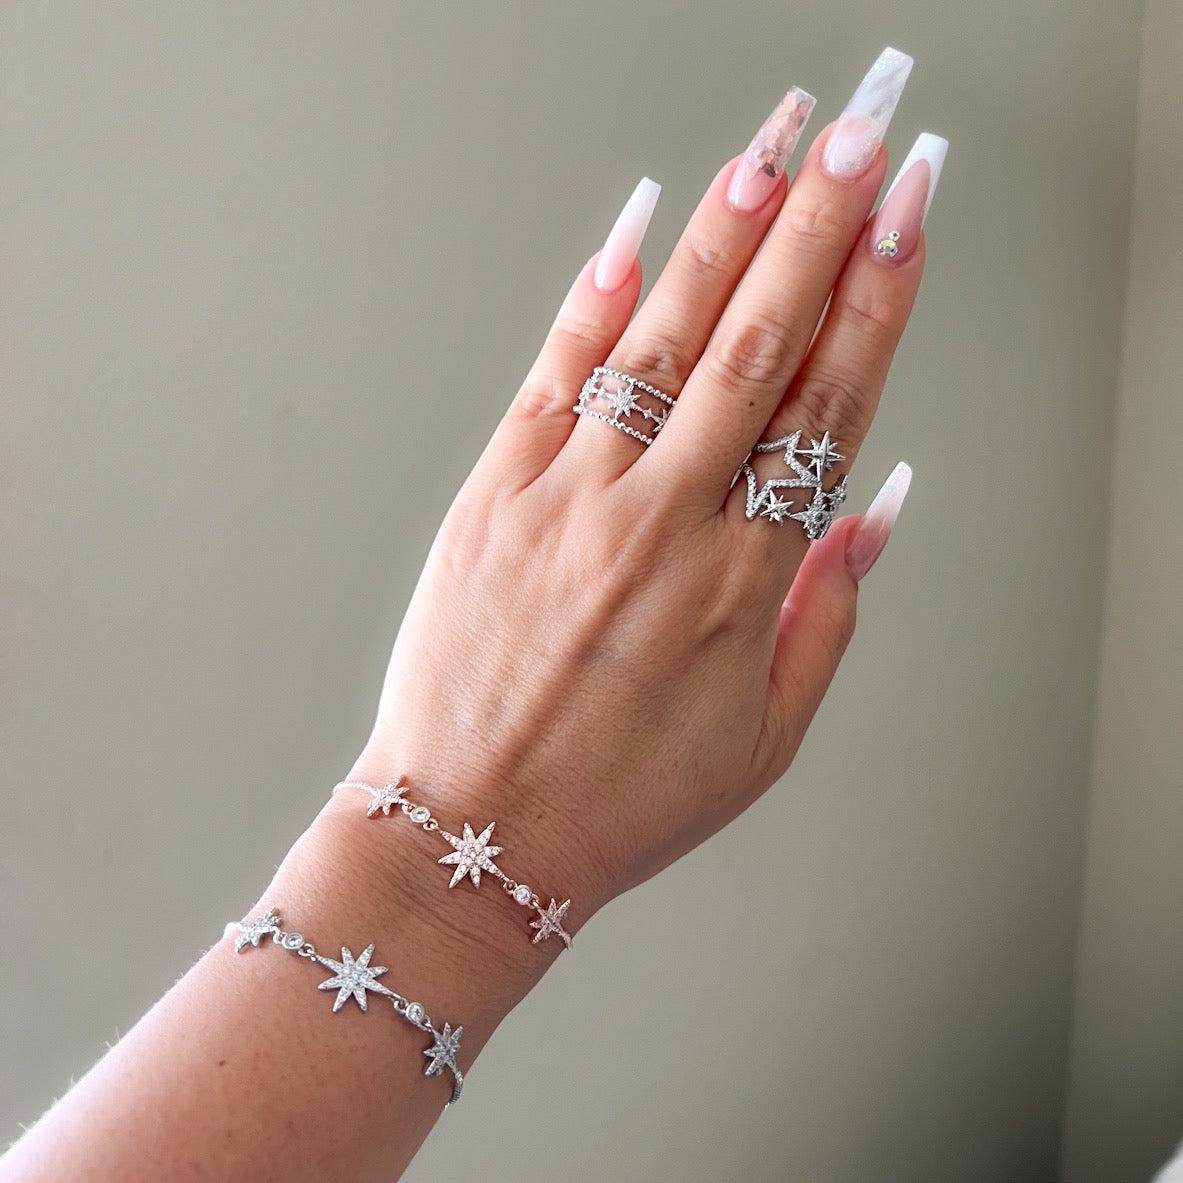 VSCO - @rachelclark1 | Girl bracelets, Beaded bracelets, Friendship  bracelets diy